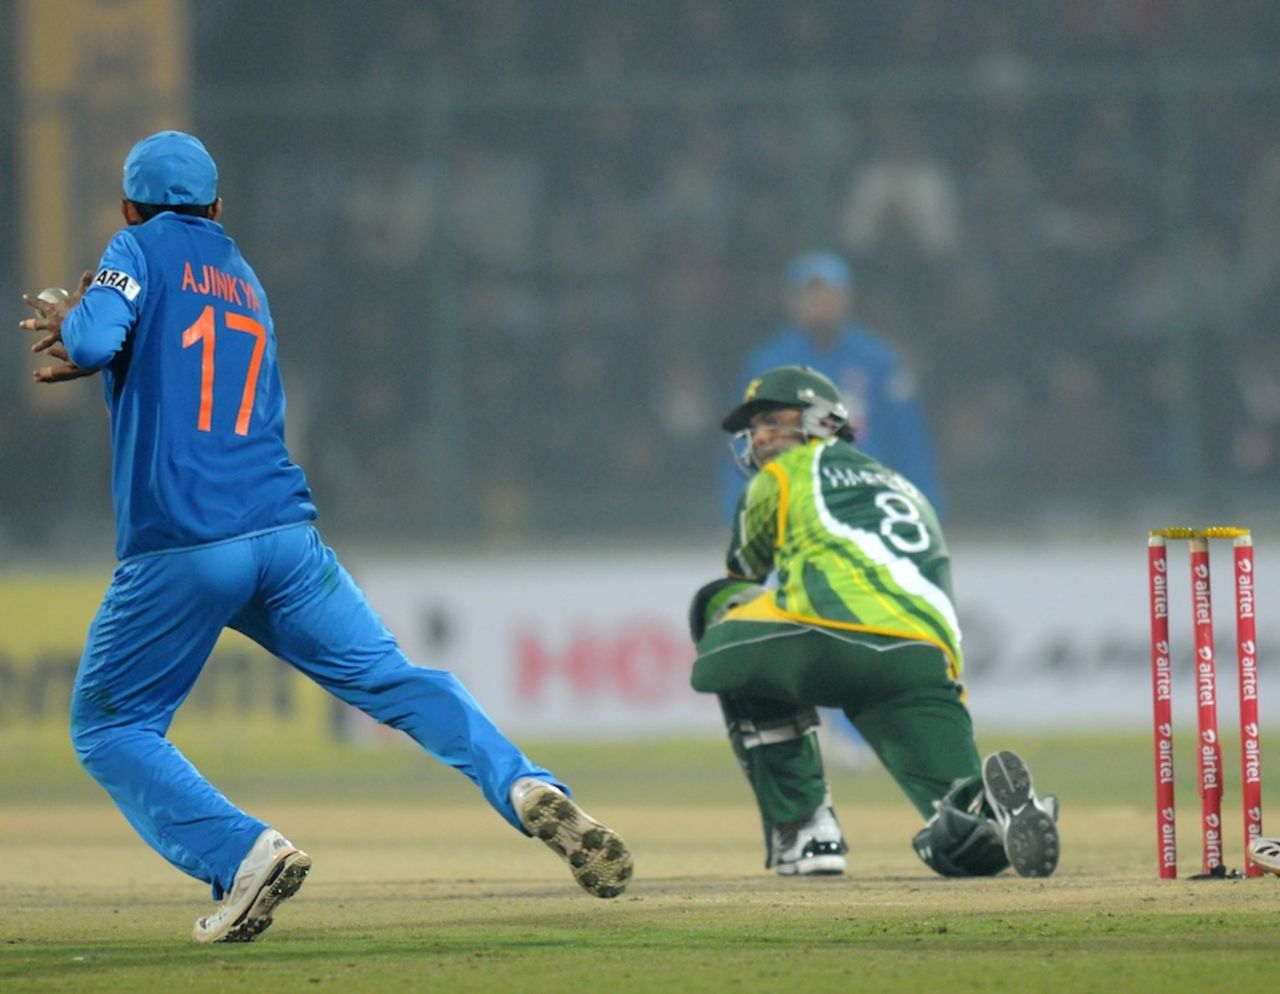 Ajinkya Rahane drops Mohammad Hafeez, India v Pakistan, 3rd ODI, Delhi, January 6, 2013